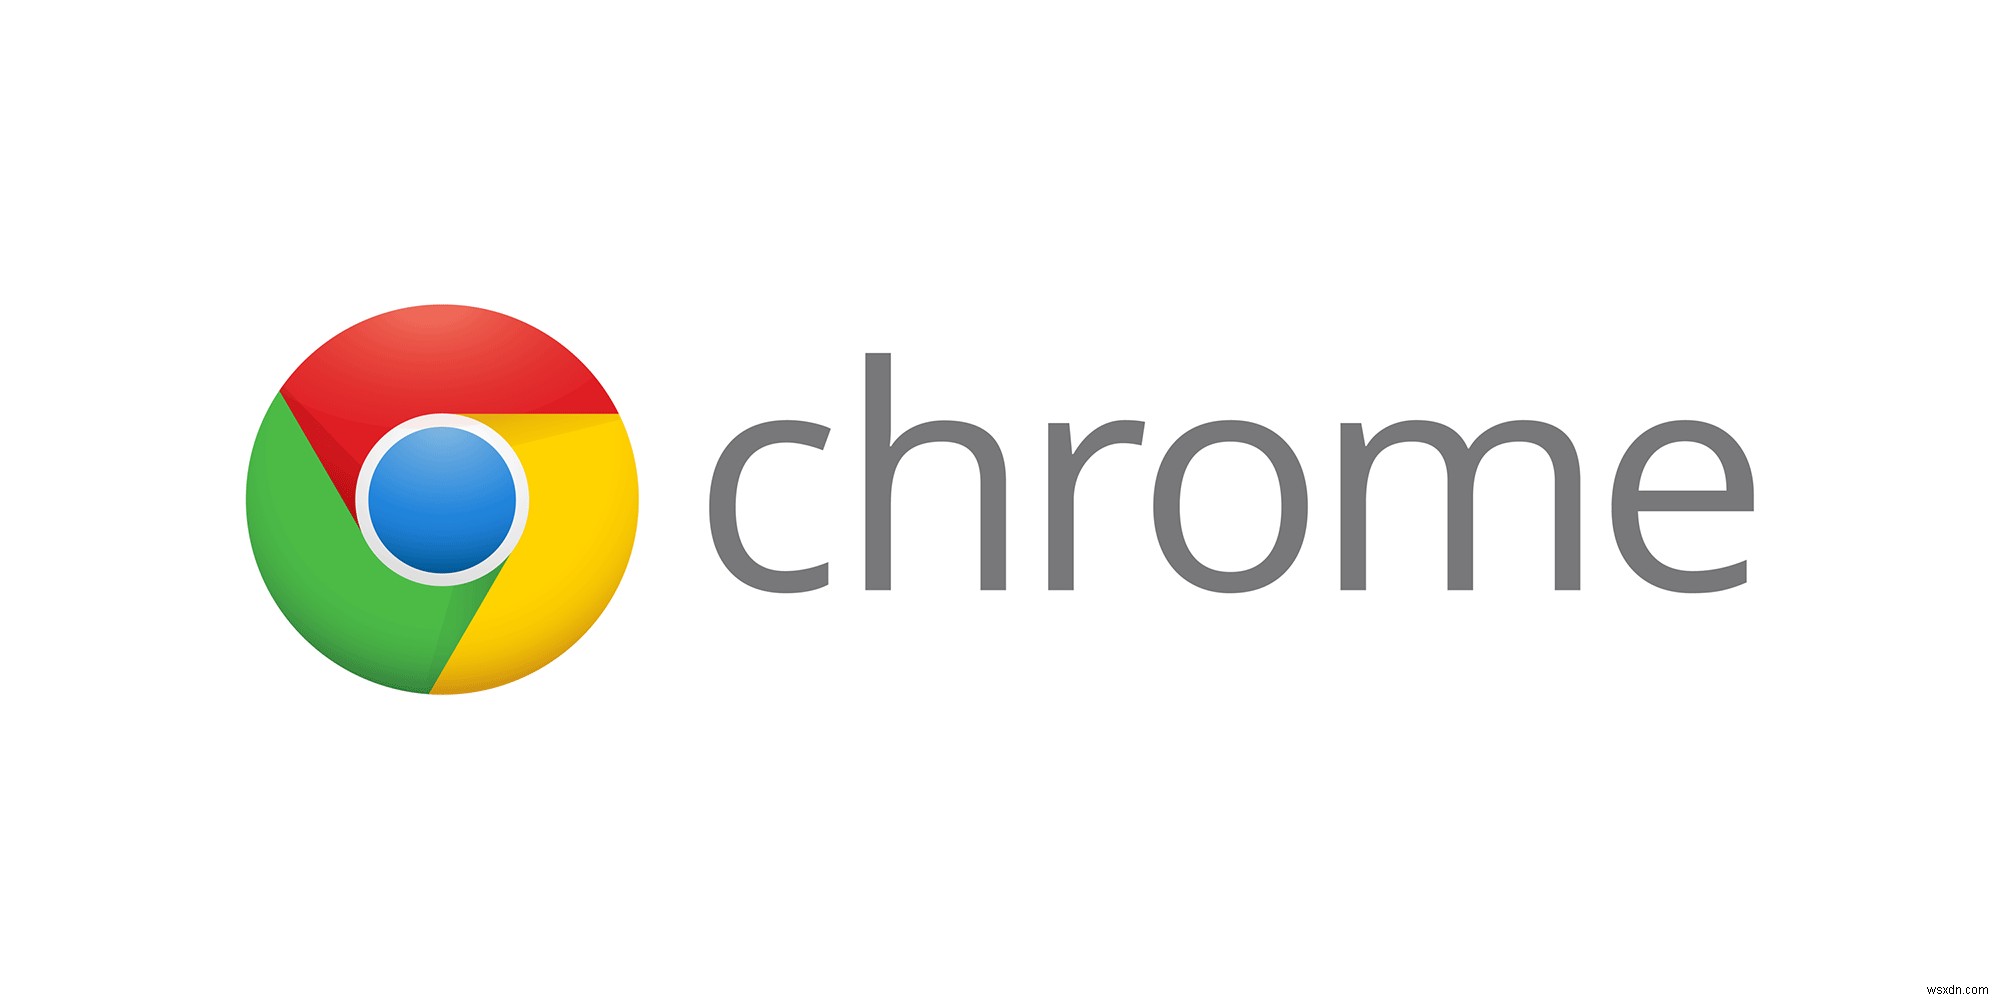 วิธีบล็อกเว็บไซต์ใน Chrome